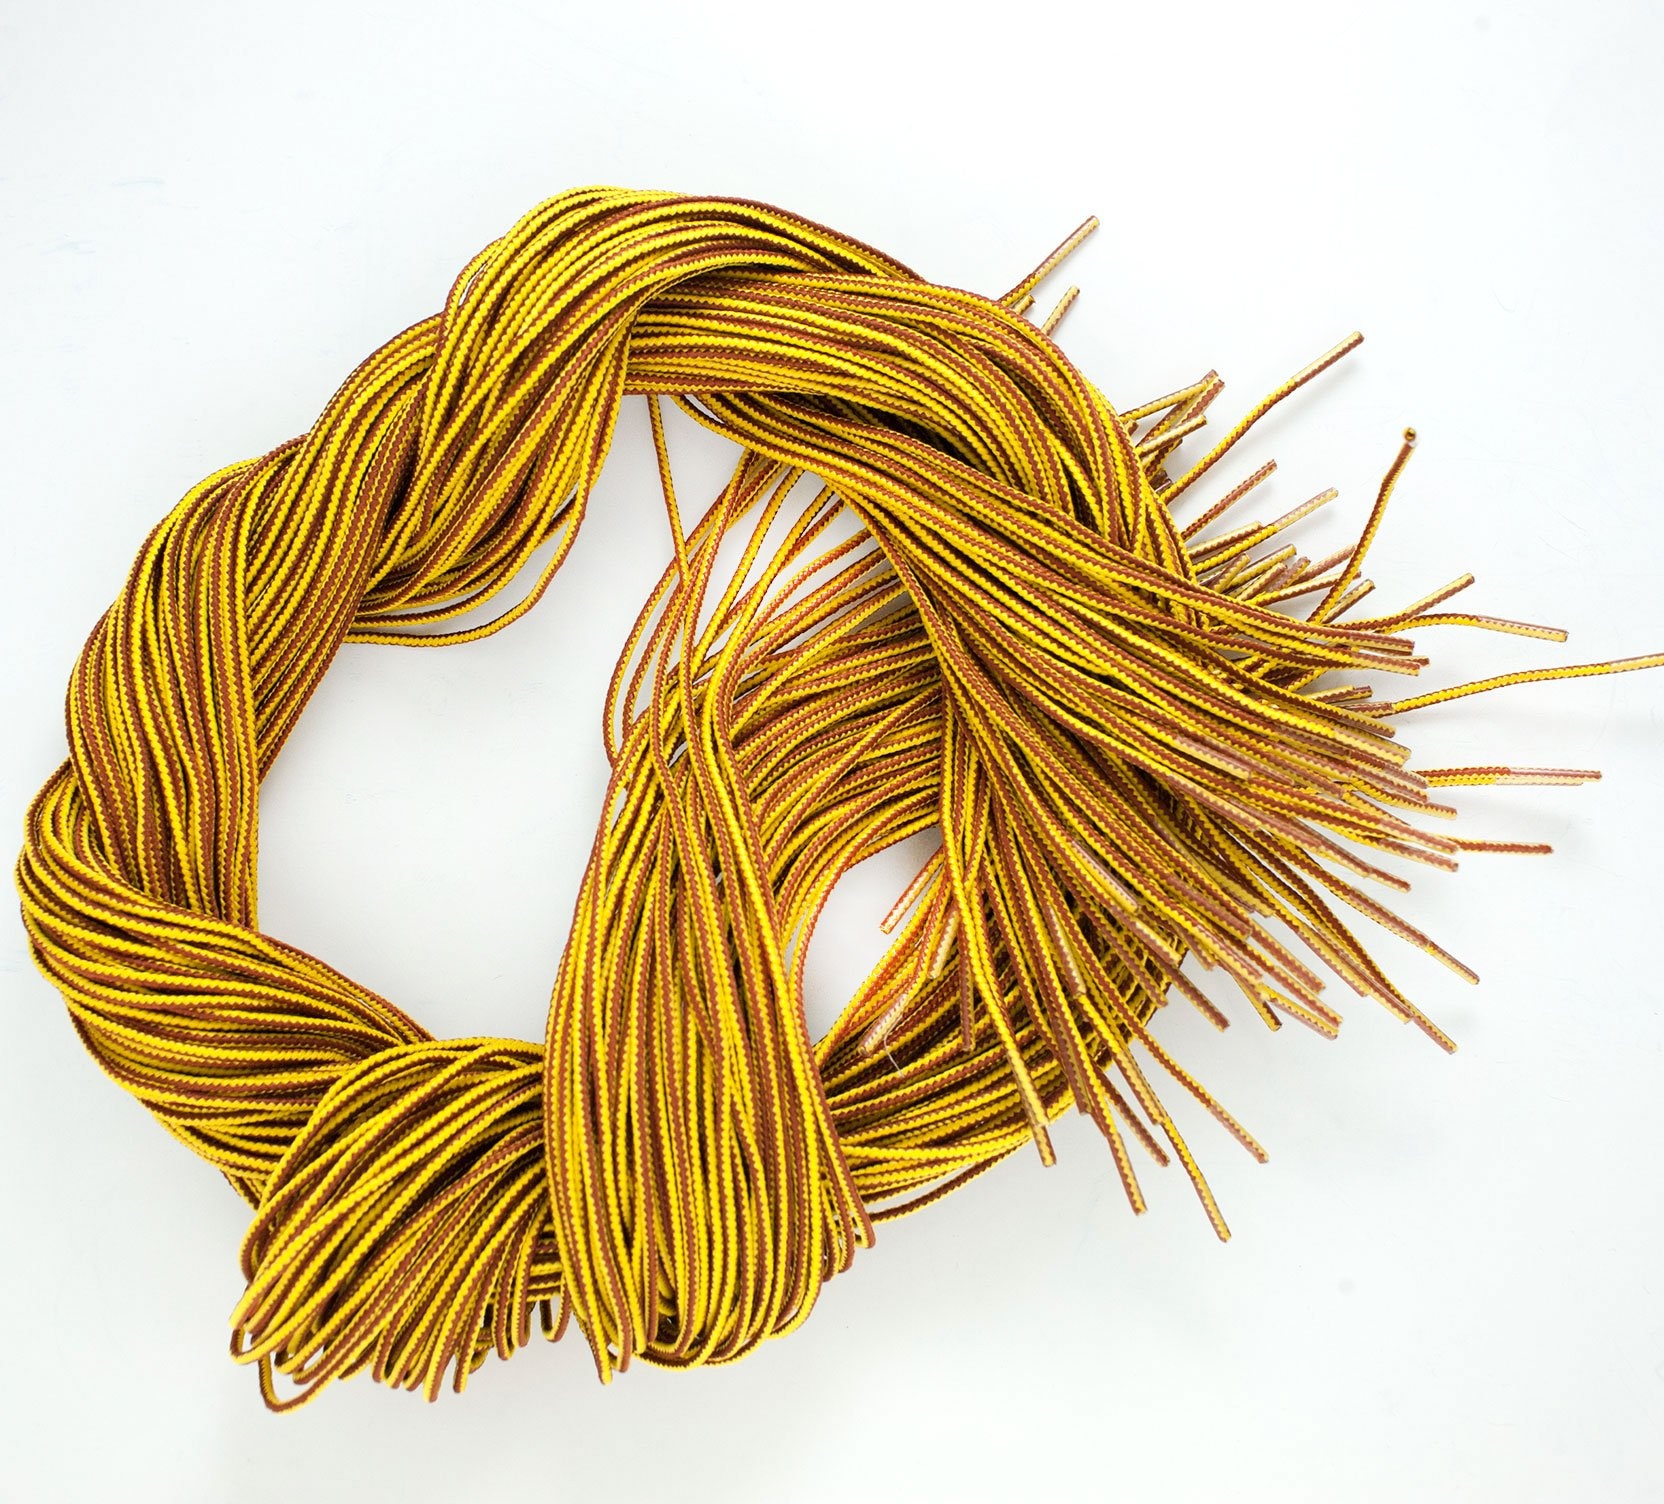 Wesco-NL Wesco® Nylon Laces - Yellow/Brown - 2